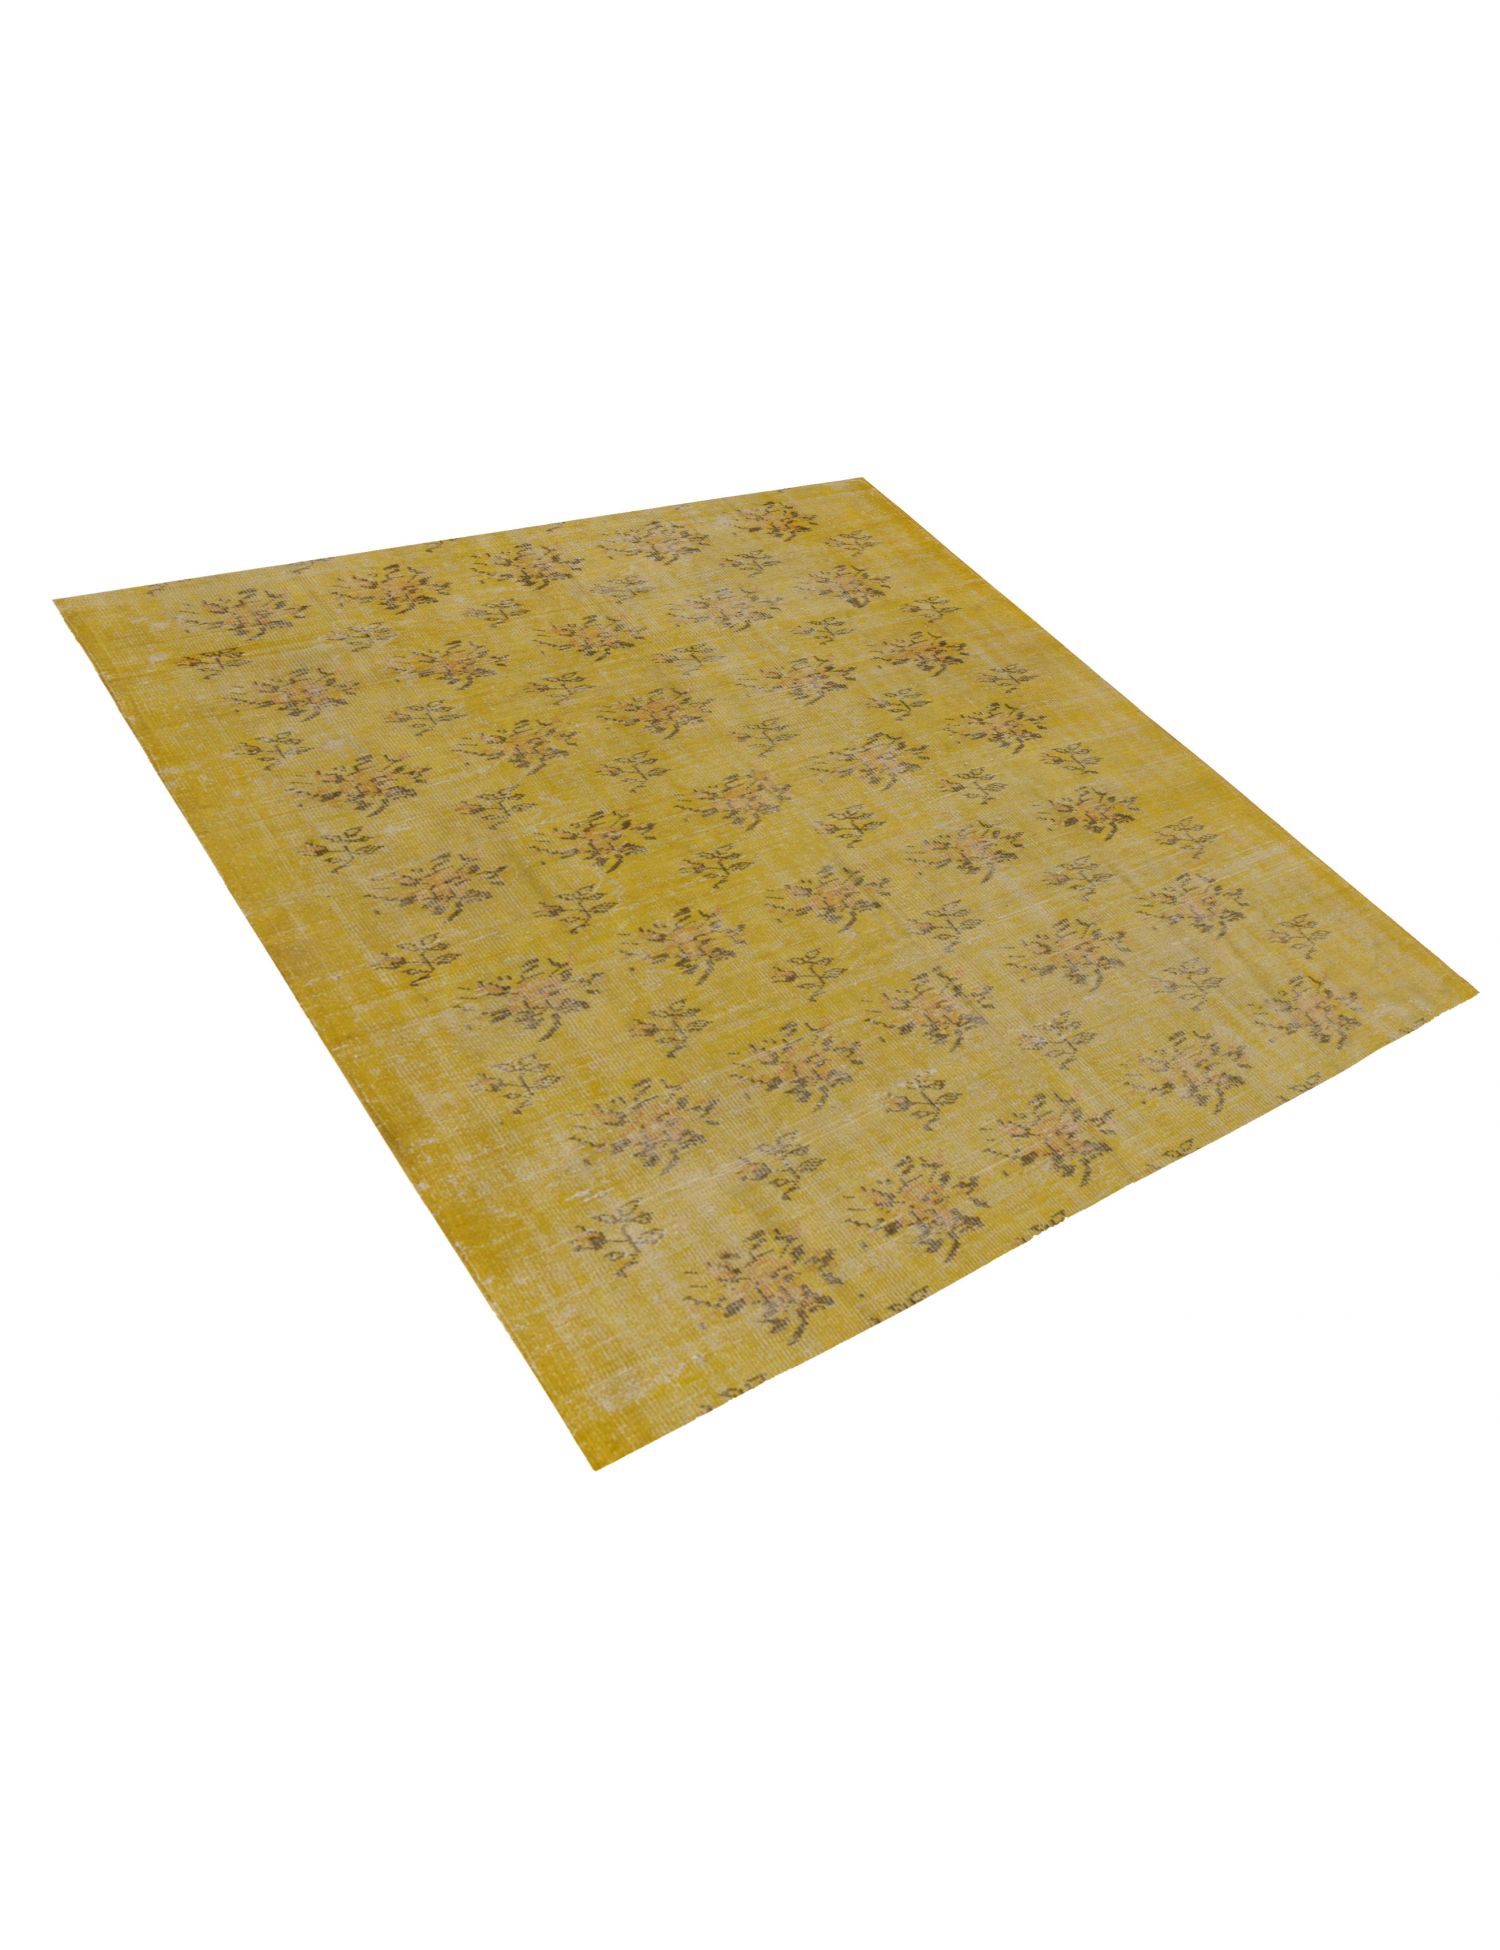 Vintage Teppich  gelb <br/>200 x 200 cm